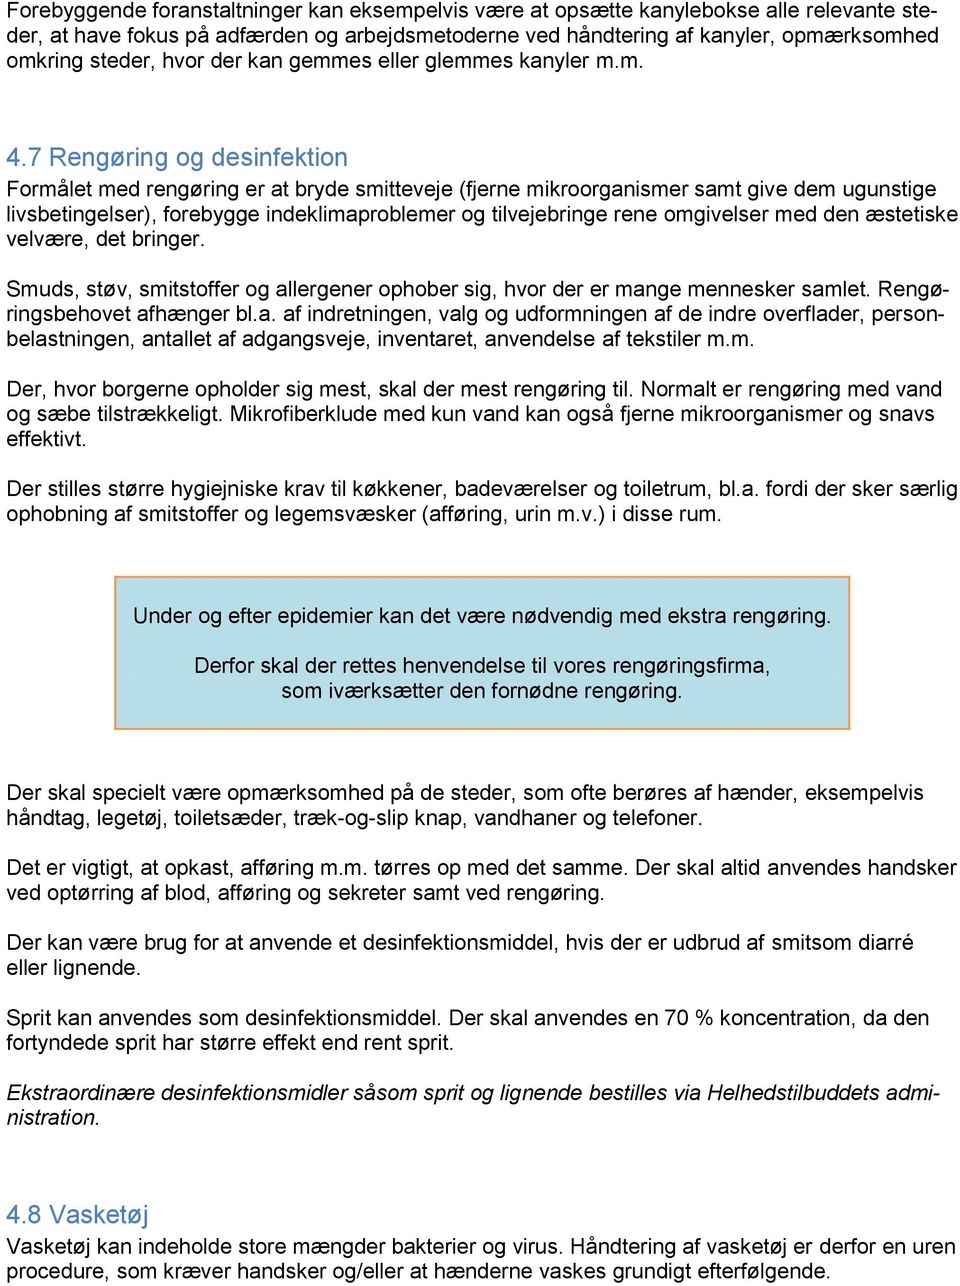 Paradis For pokker klient Retningslinjer for hygiejne - PDF Free Download